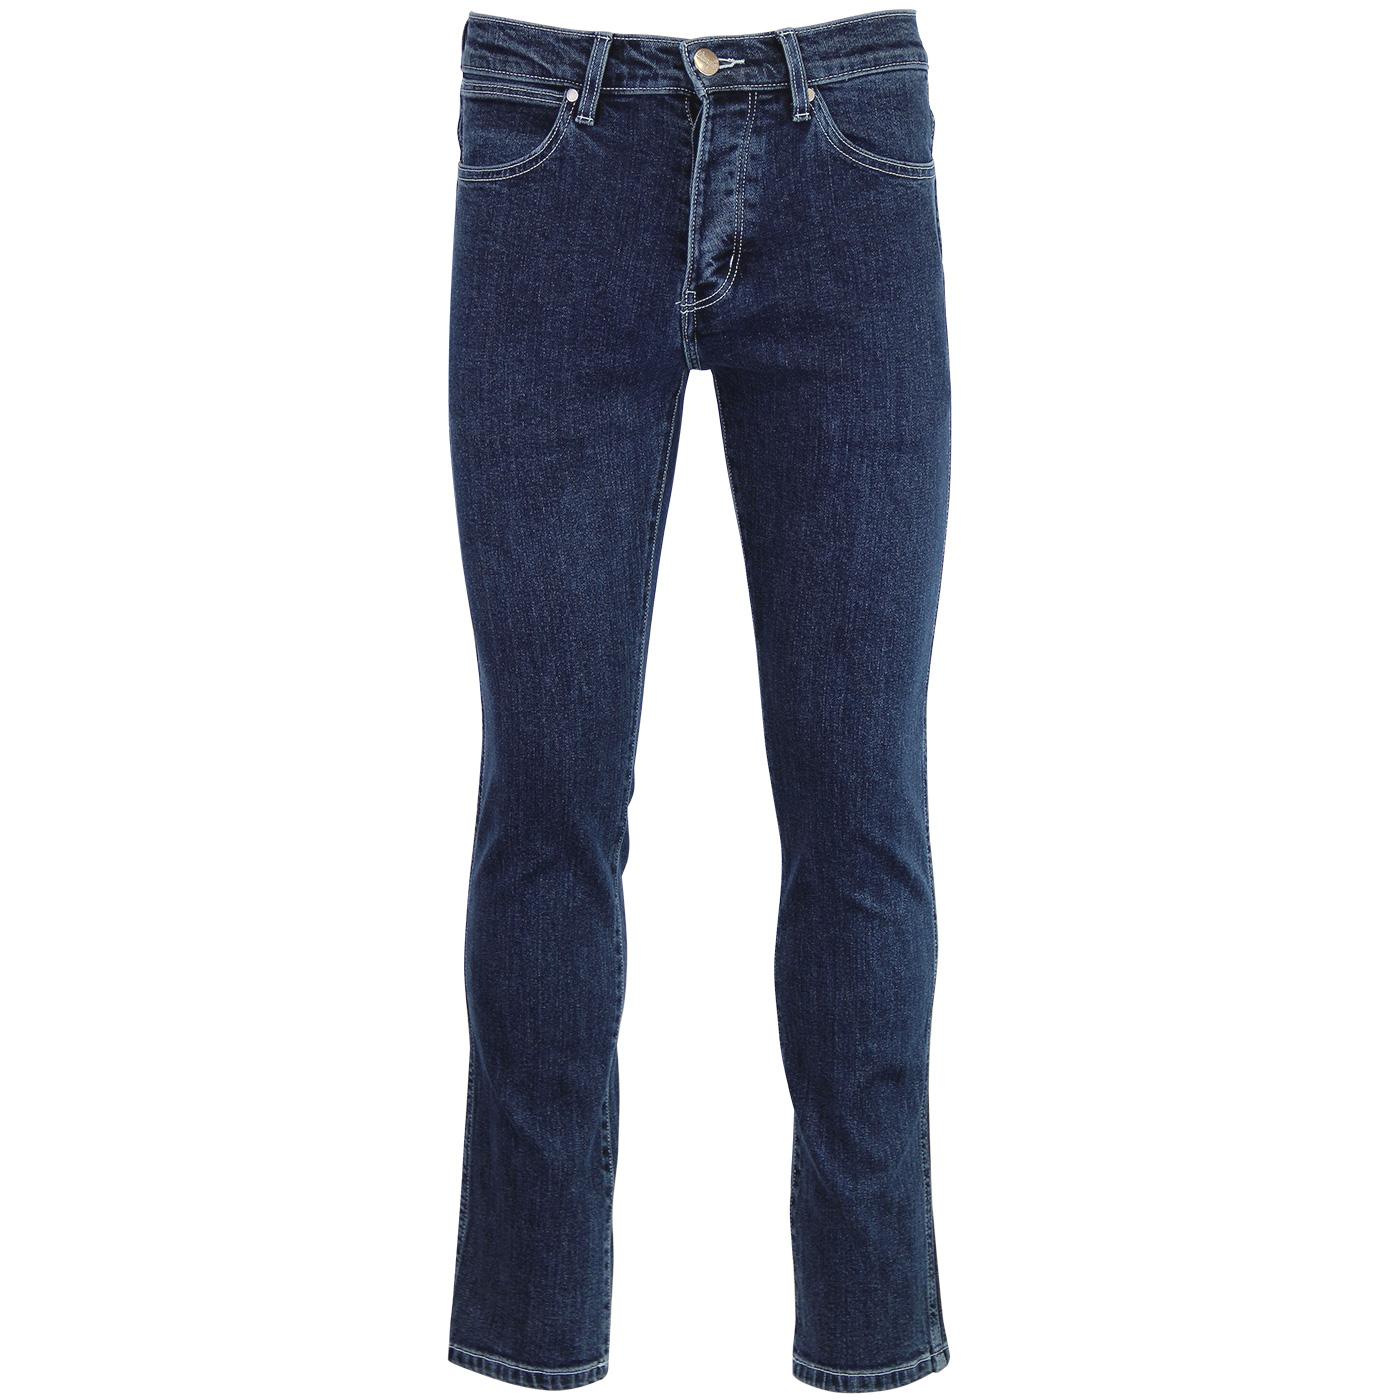 WRANGLER Spencer Retro Mod Denim Jeans in Stony Creek